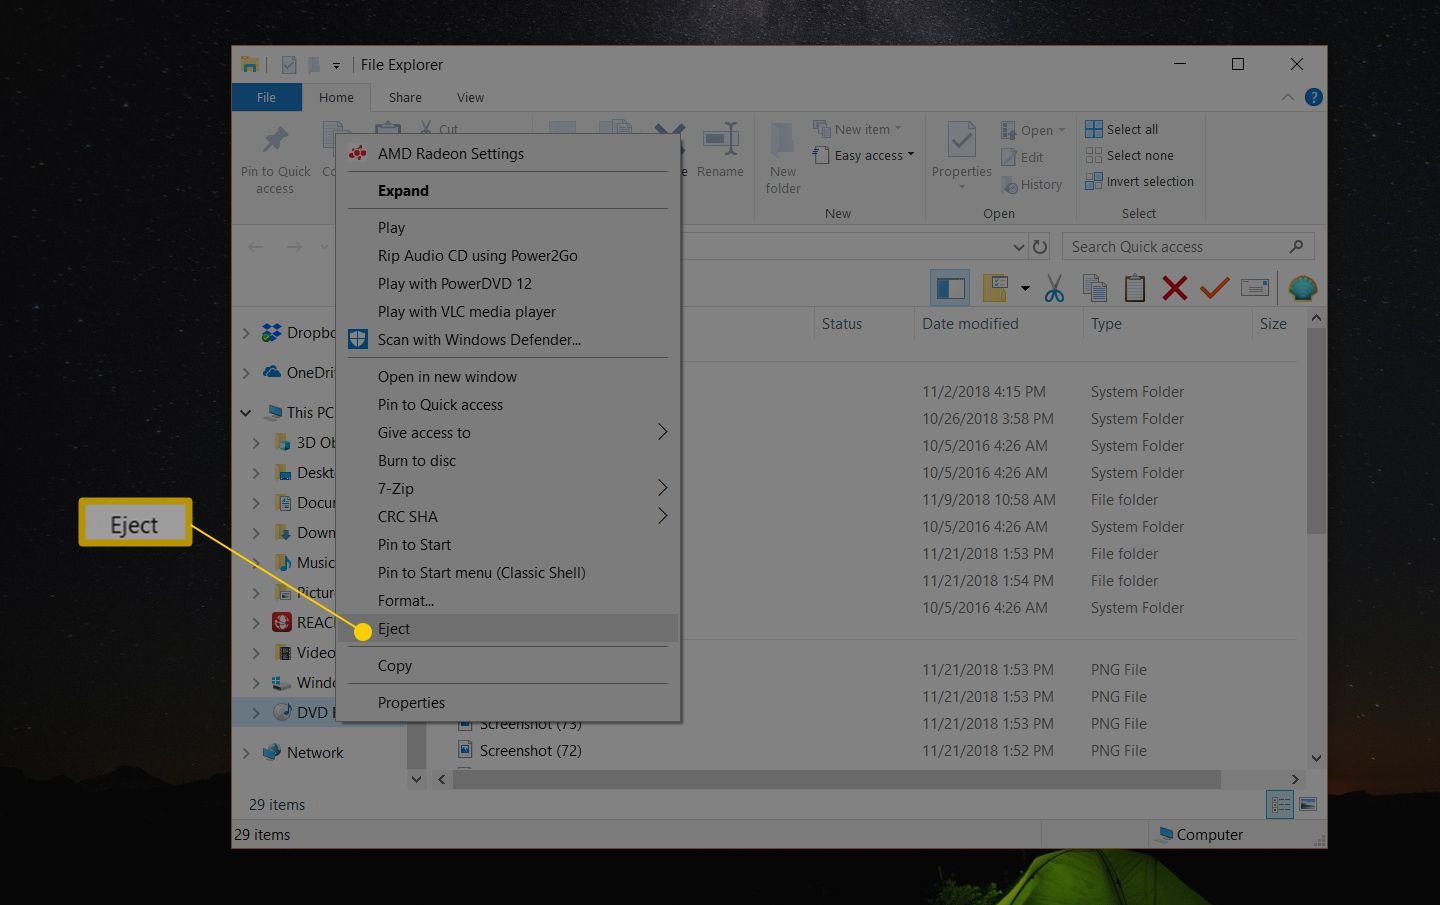 Проводник в Windows 10, показывающий контекстное меню с выделенной командой Eject